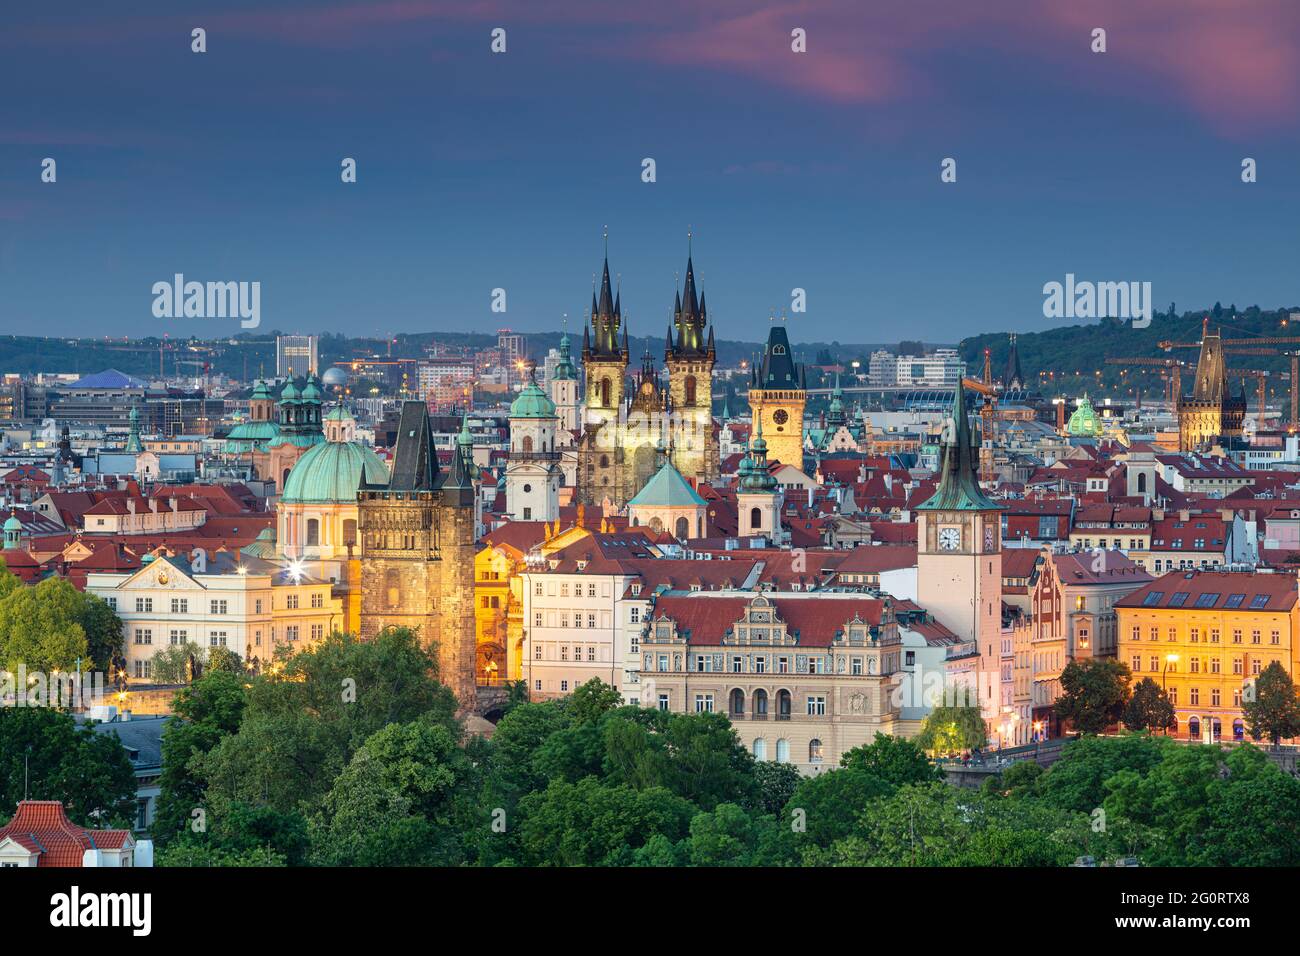 Praga. Imagen del paisaje urbano aéreo de Praga, República Checa con la Iglesia de Nuestra Señora antes de Tyn, la Torre del Puente de la Ciudad Vieja, la Torre de la Pólvora al atardecer. Foto de stock